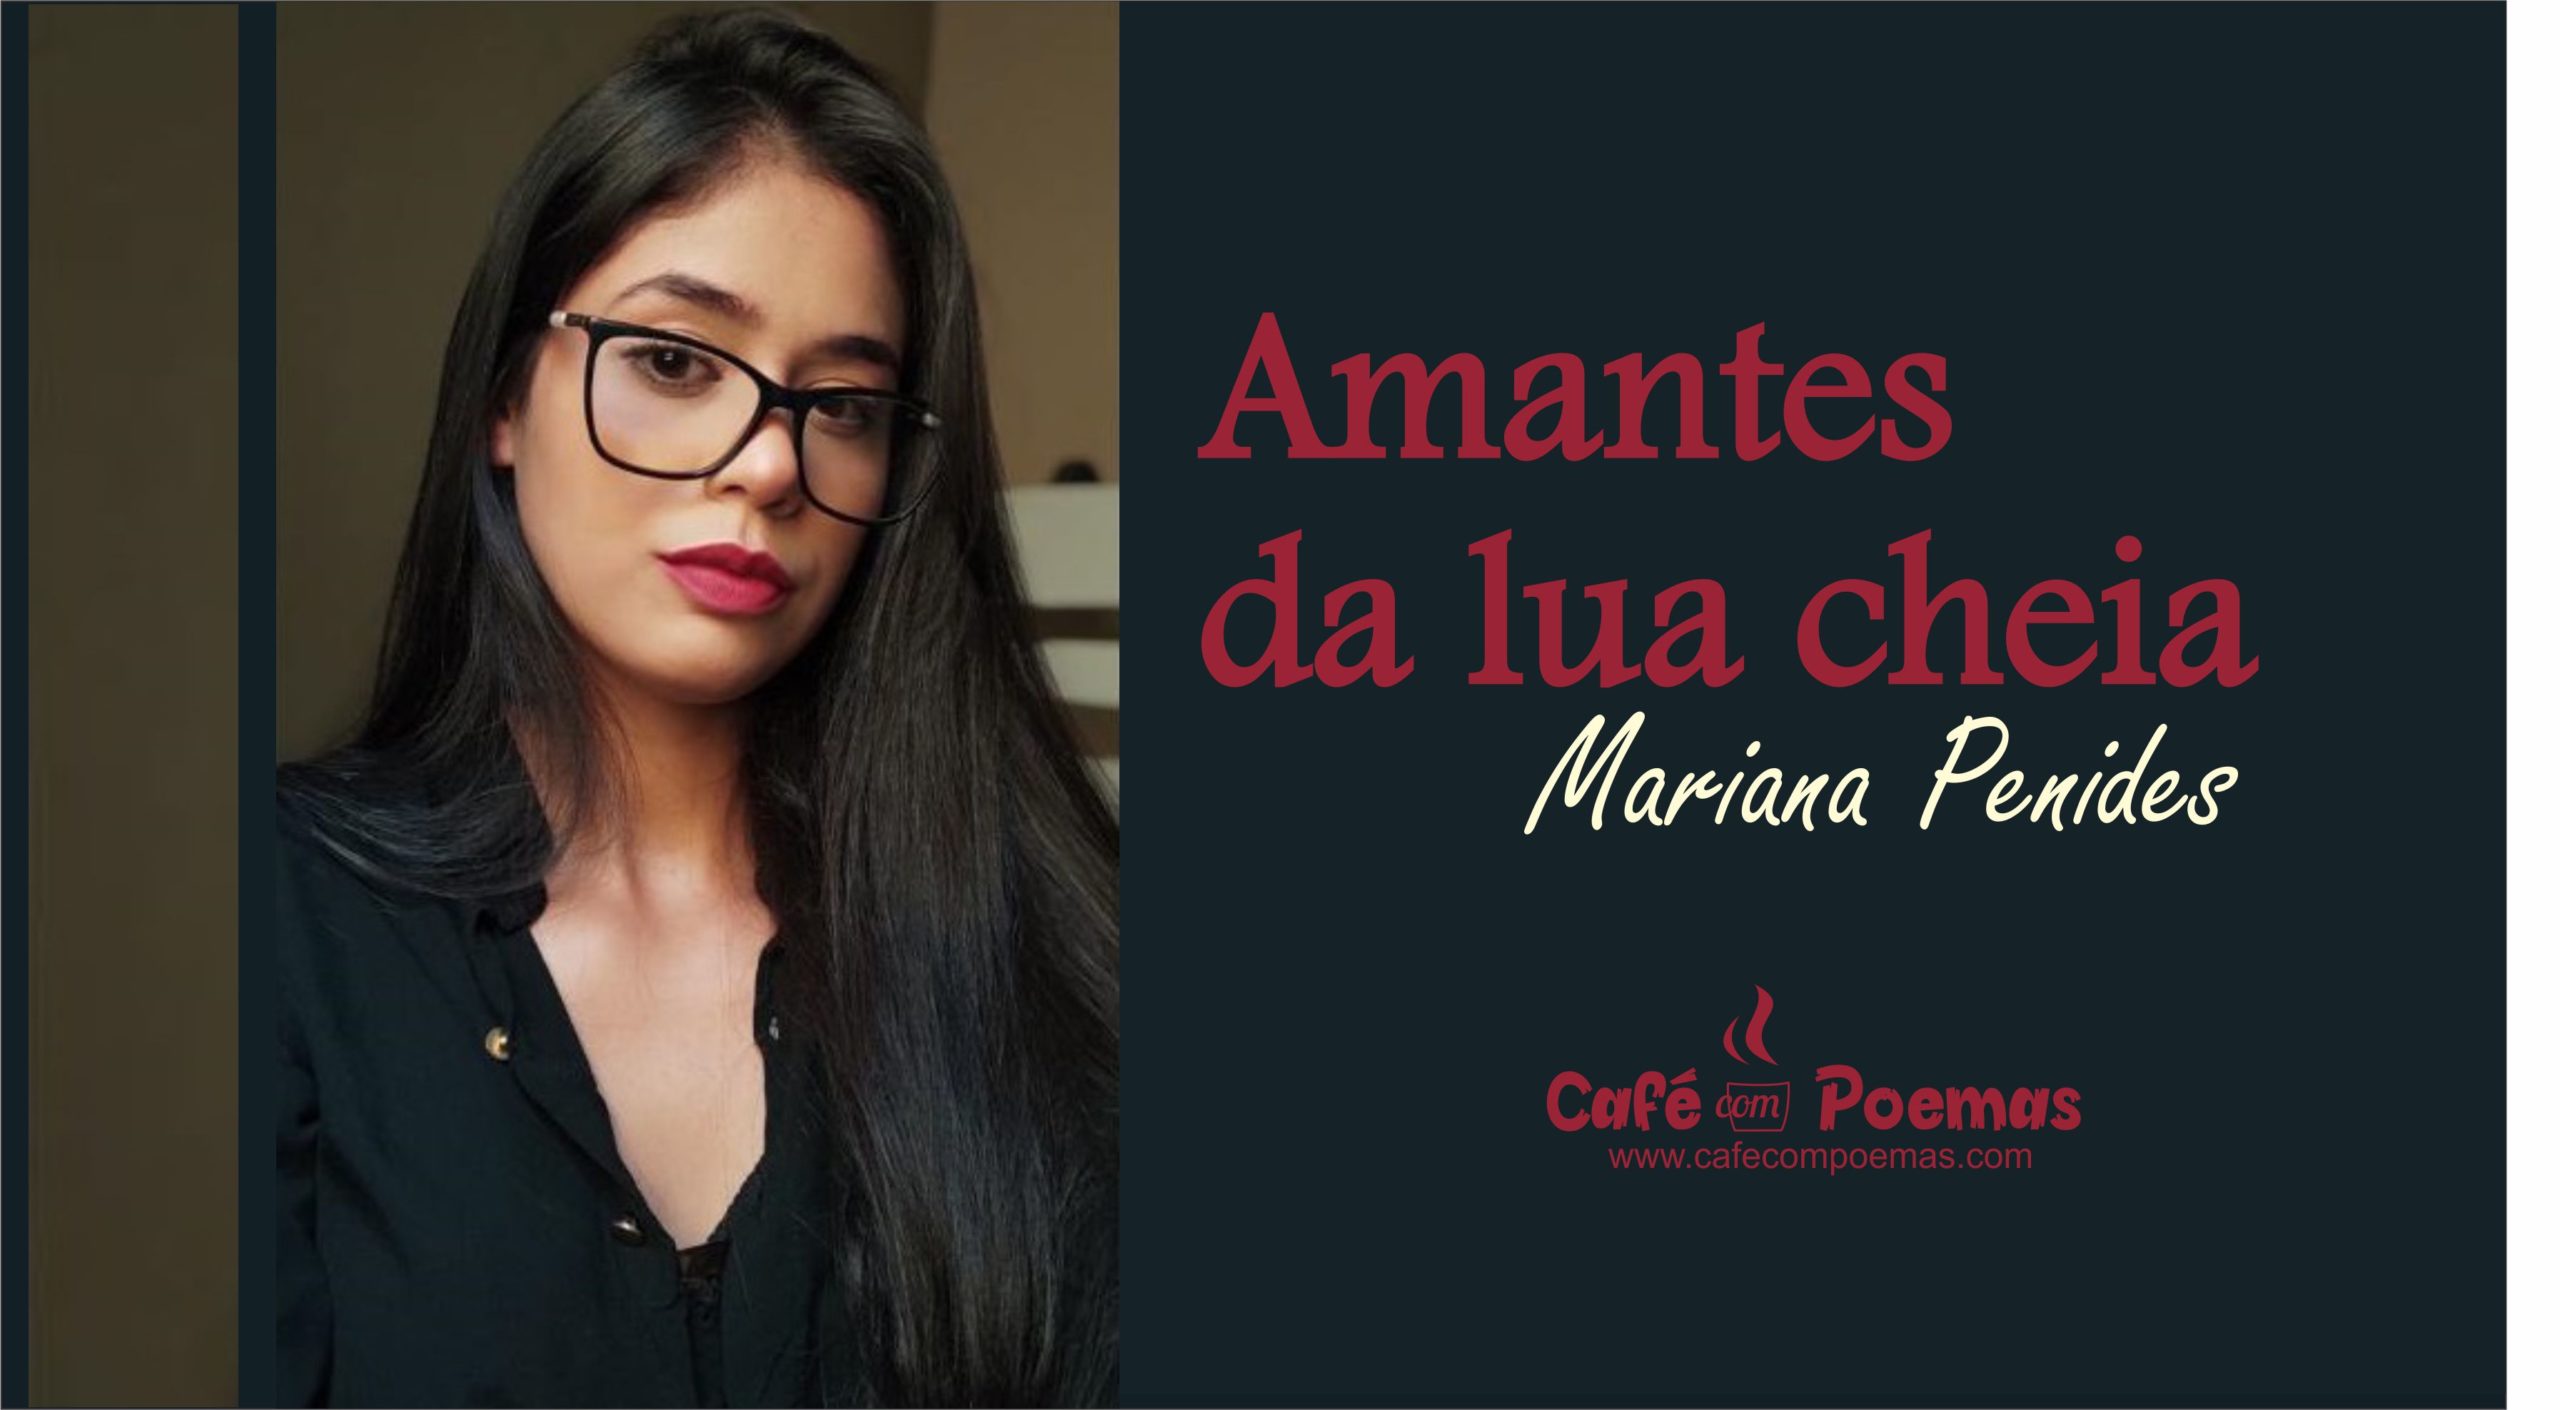 mariana penides café com poemas condeúba poesia lua